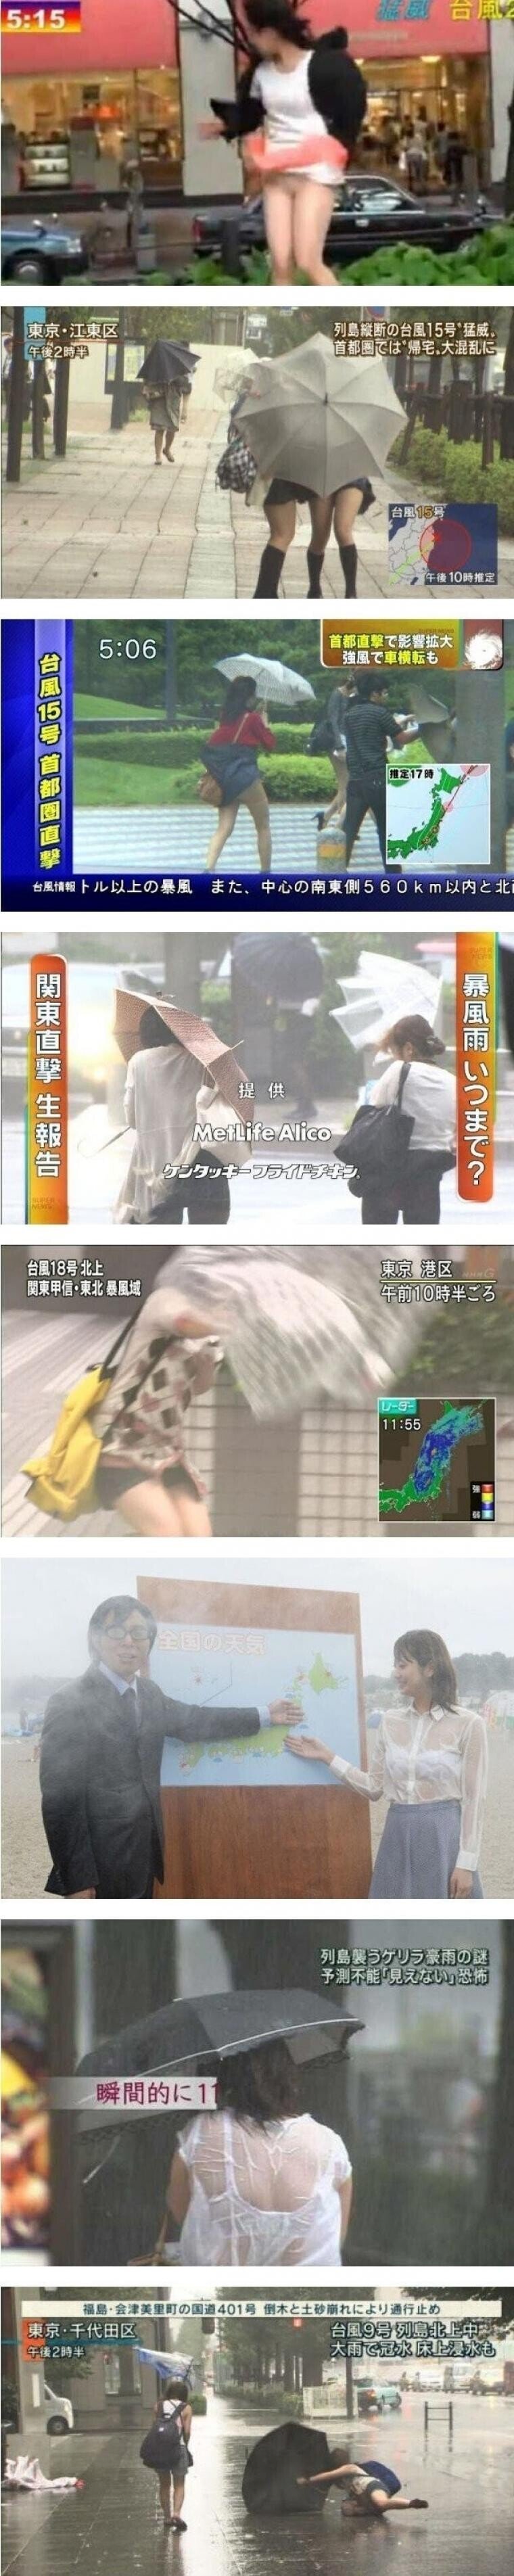 일본 태풍.jpg